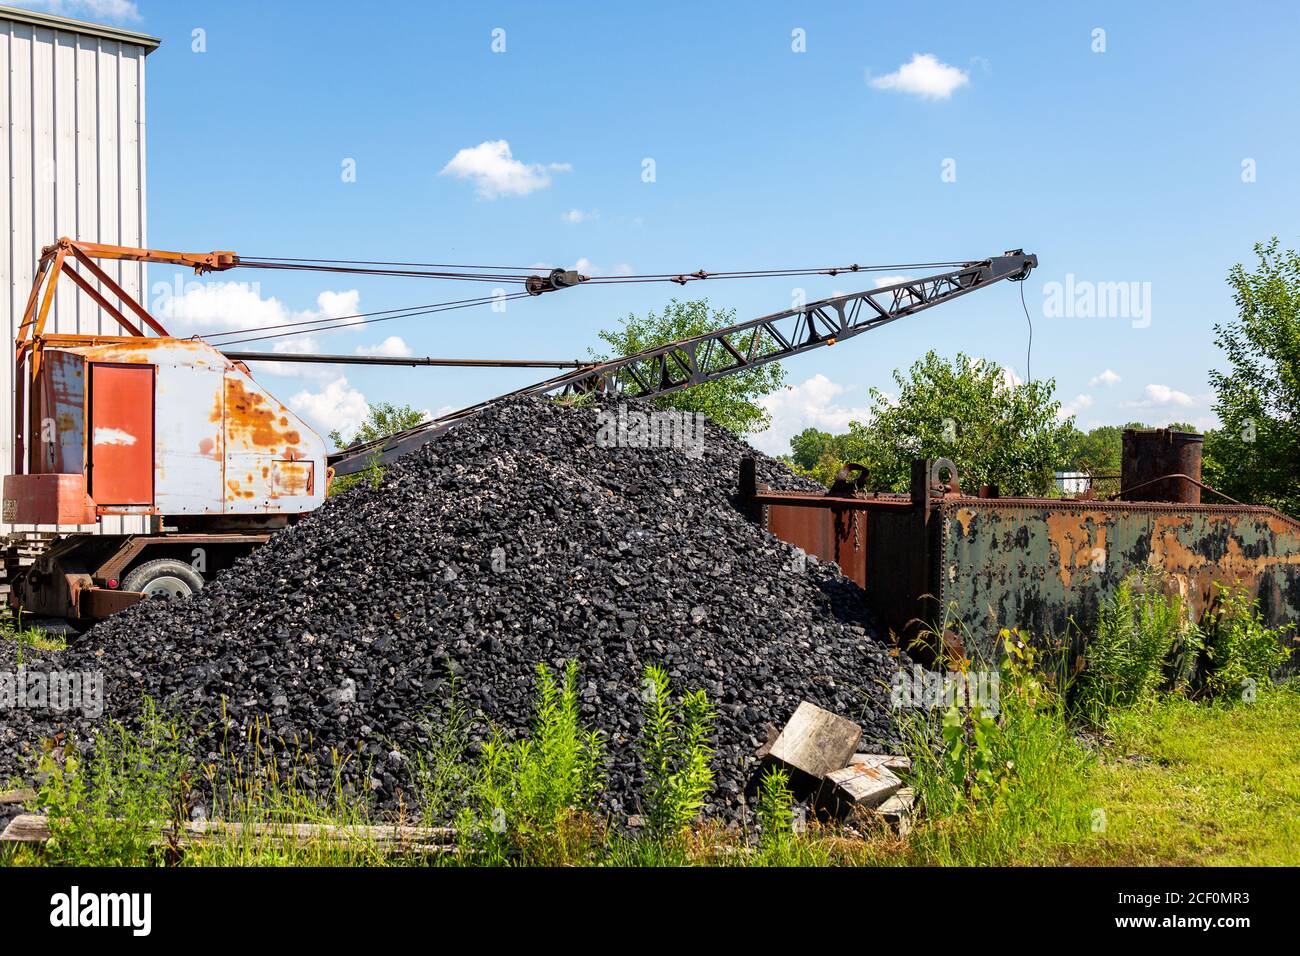 Kohle wird in der Nähe eines Kranwagens auf einem Grundstück außerhalb von New Haven, Indiana, USA, gestapelt. Stockfoto